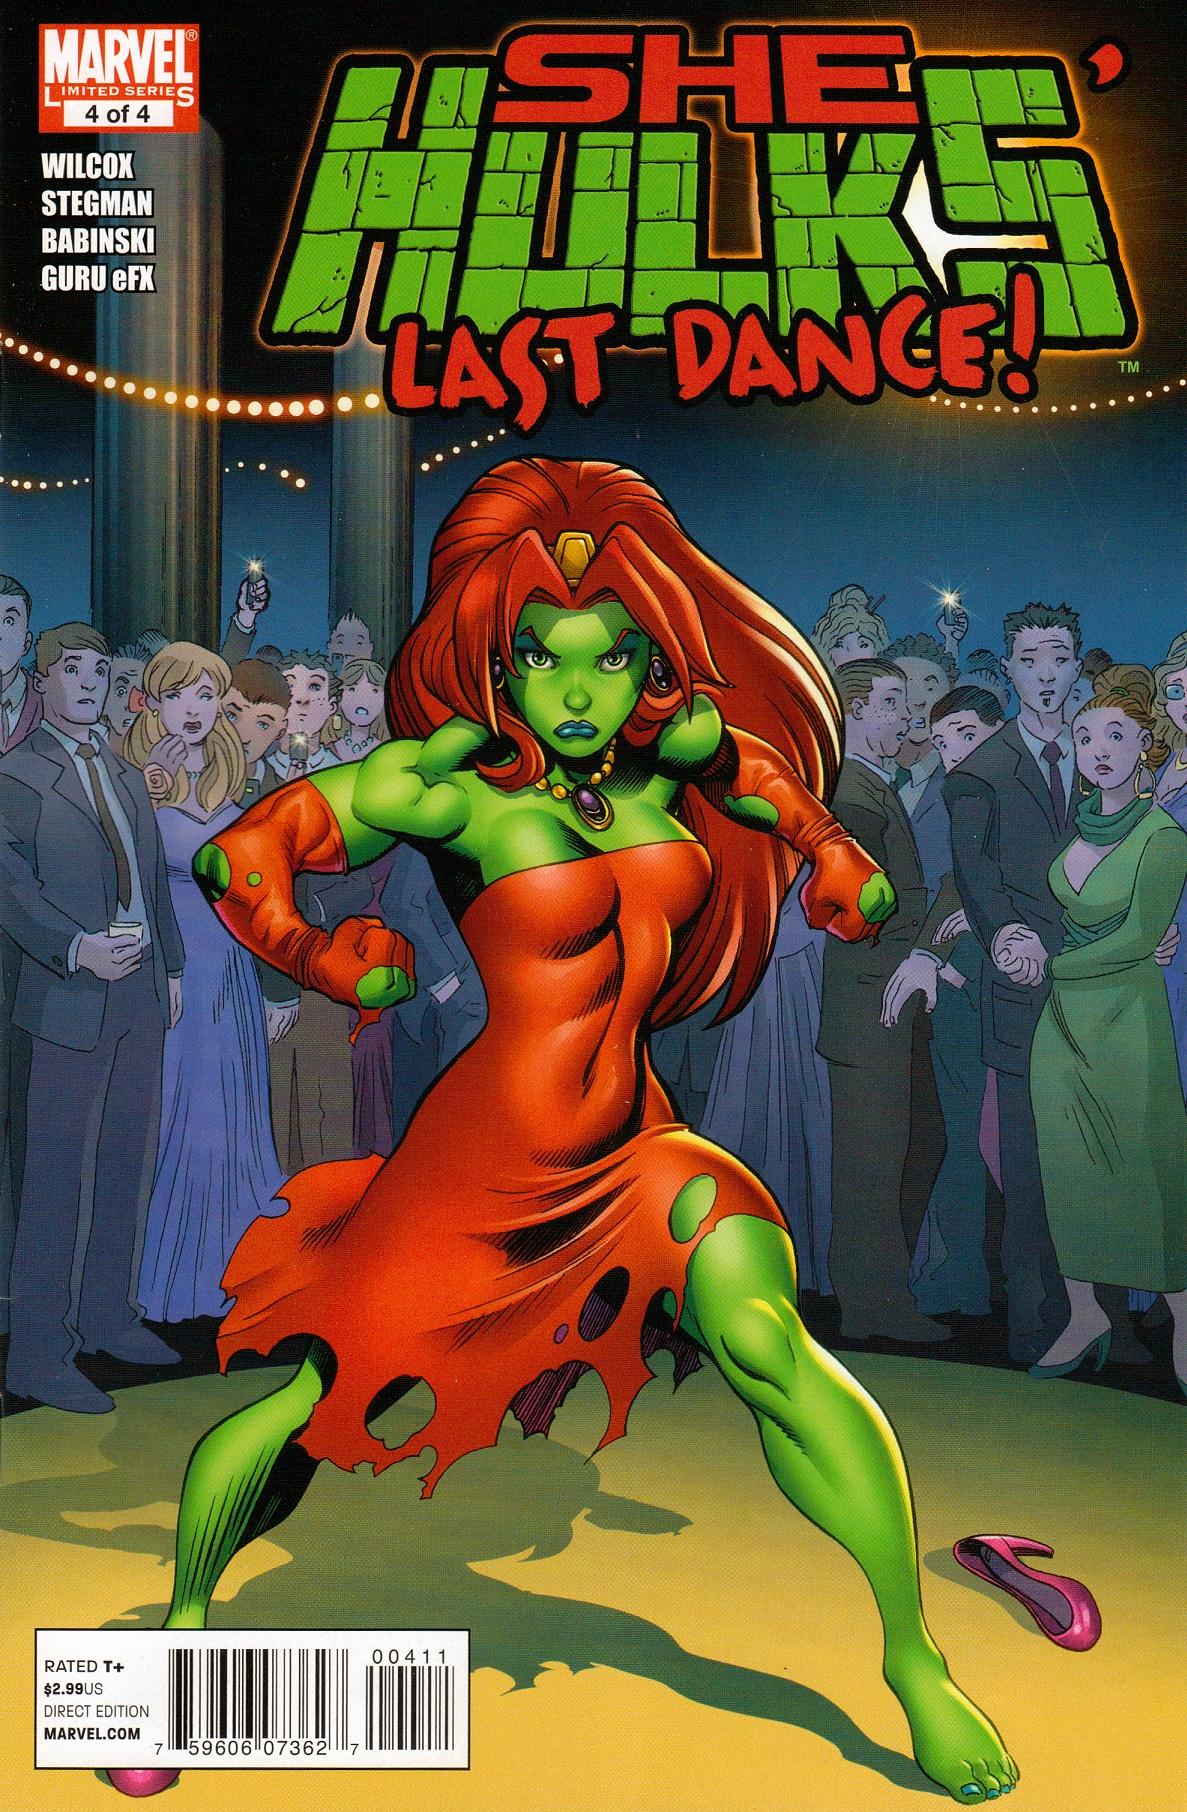 She-Hulks Vol. 1 #4